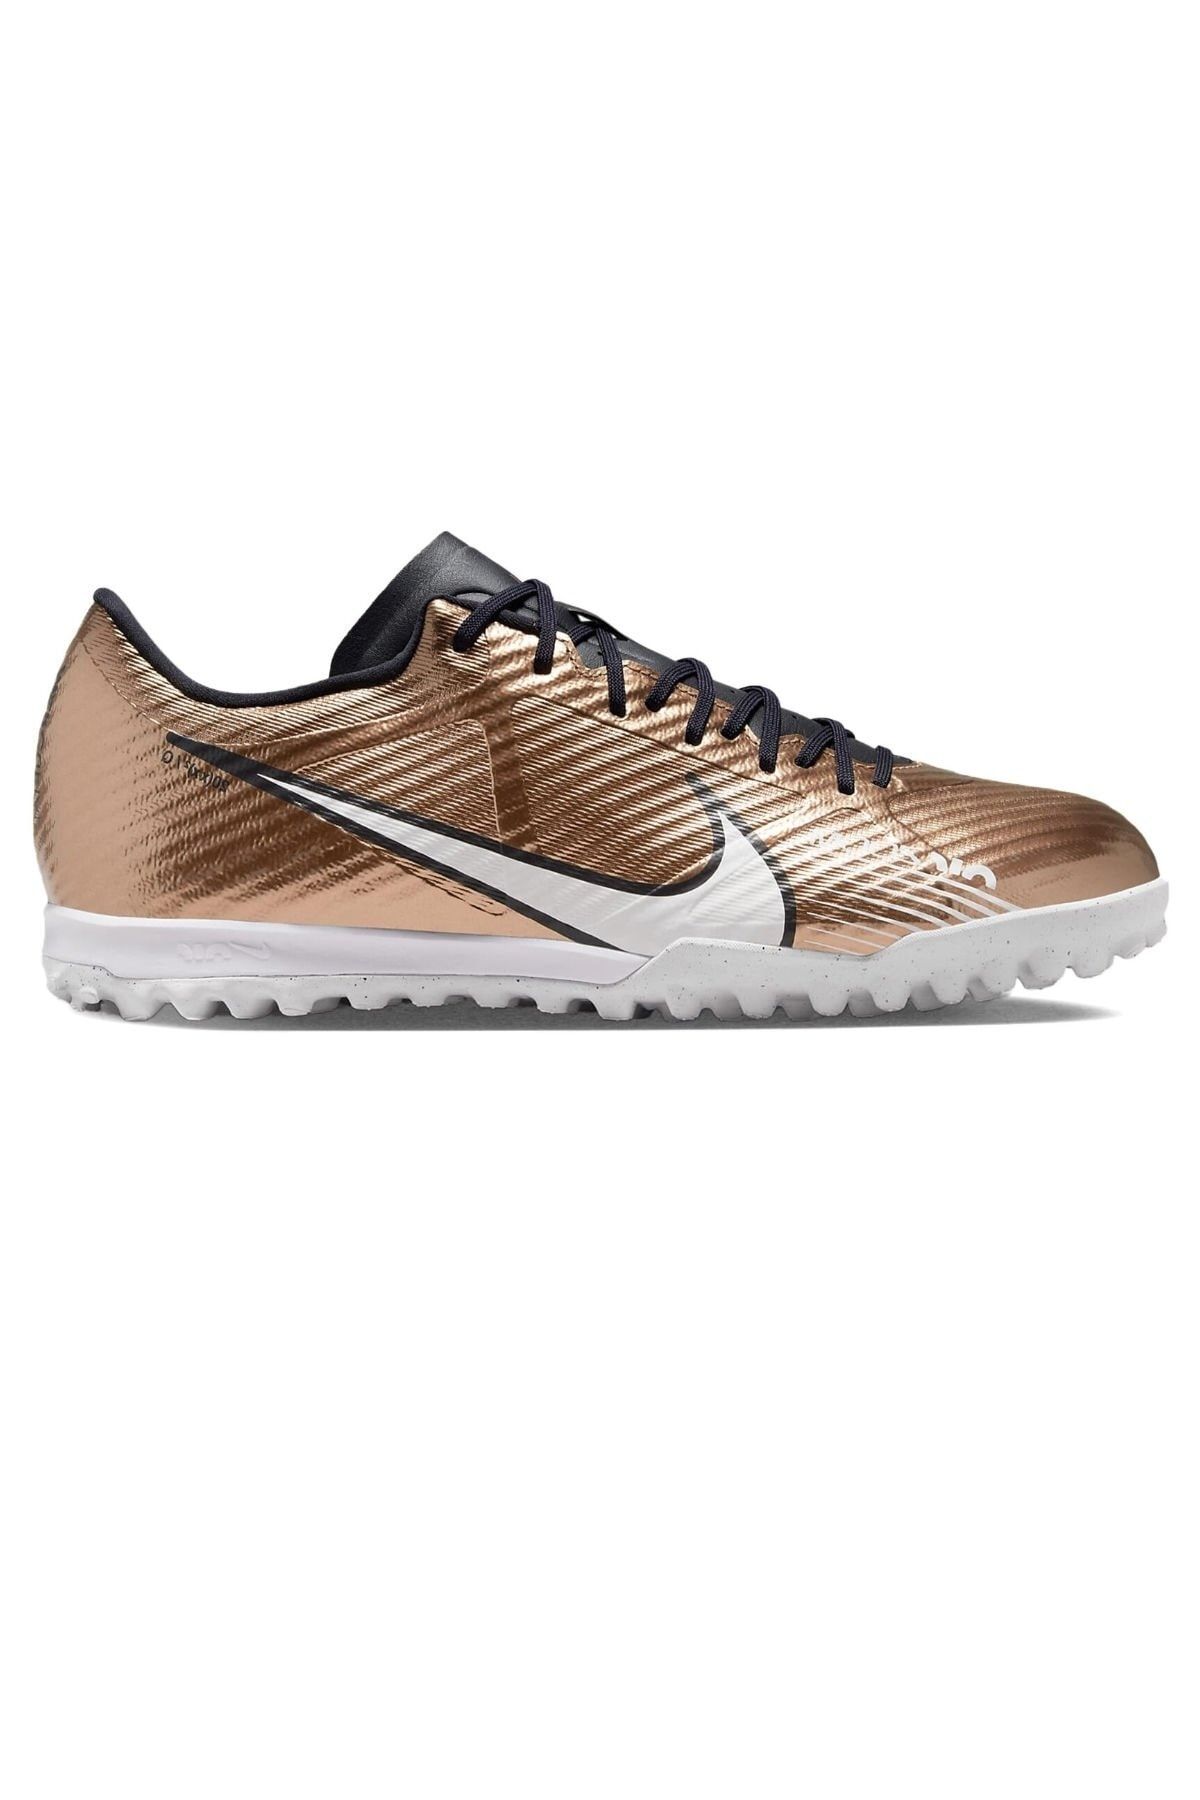 Nike Zoom Mercurial Vapor 15 Academy Tf Erkek Halı Saha Ayakkabısı Dr5949-810